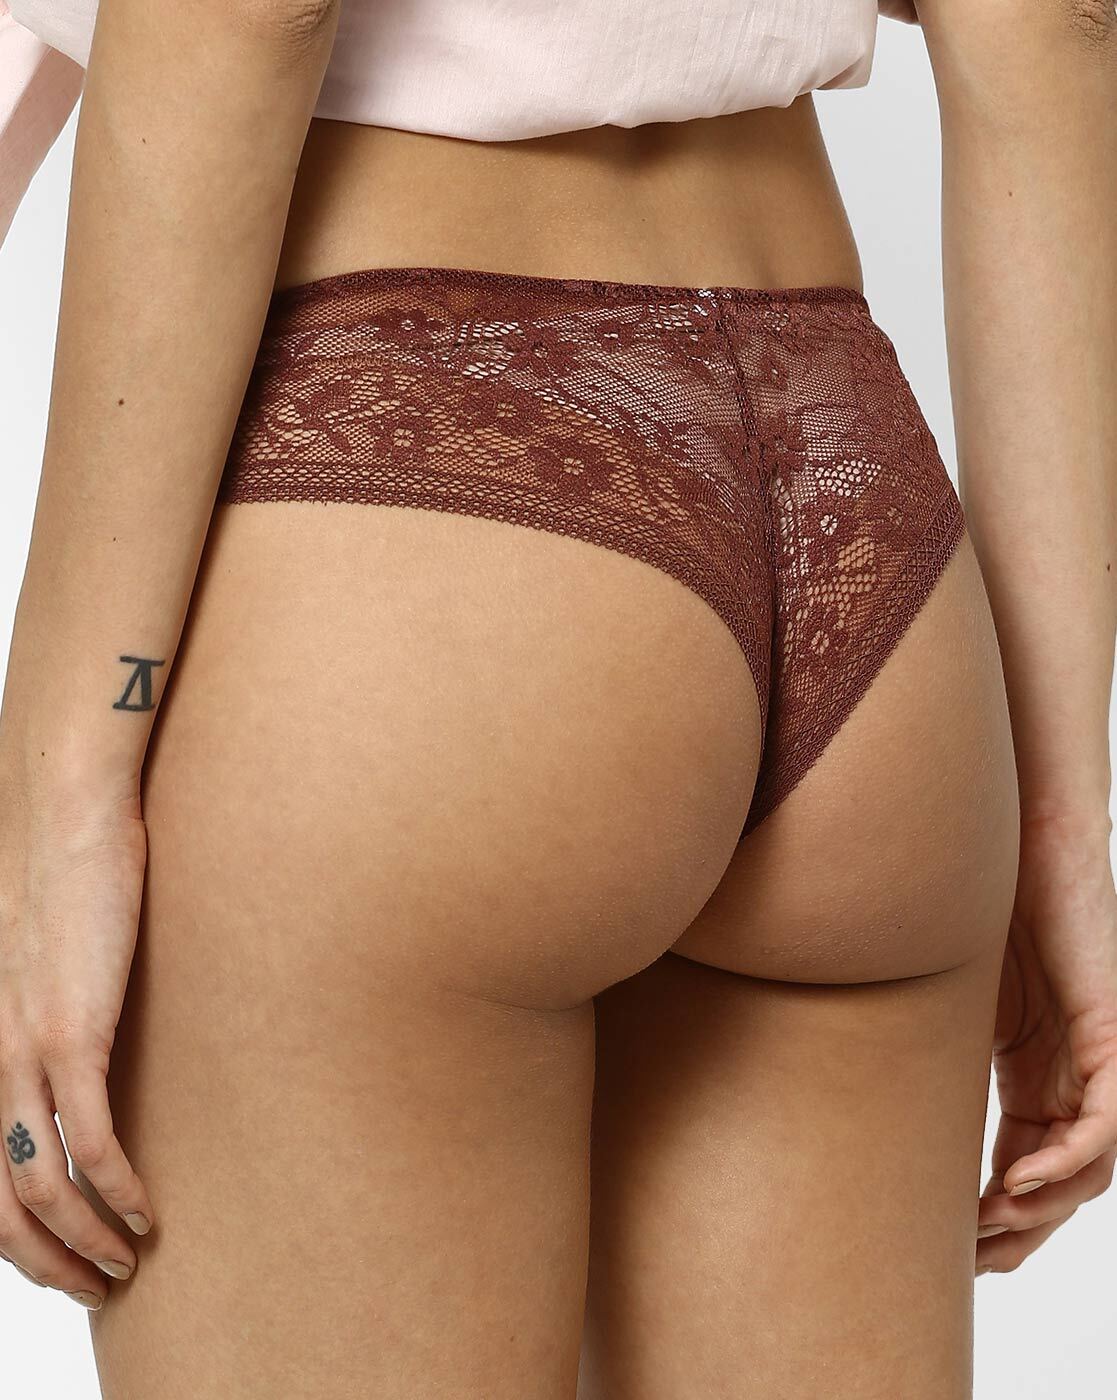 Buy Brown Panties for Women by Penti Online